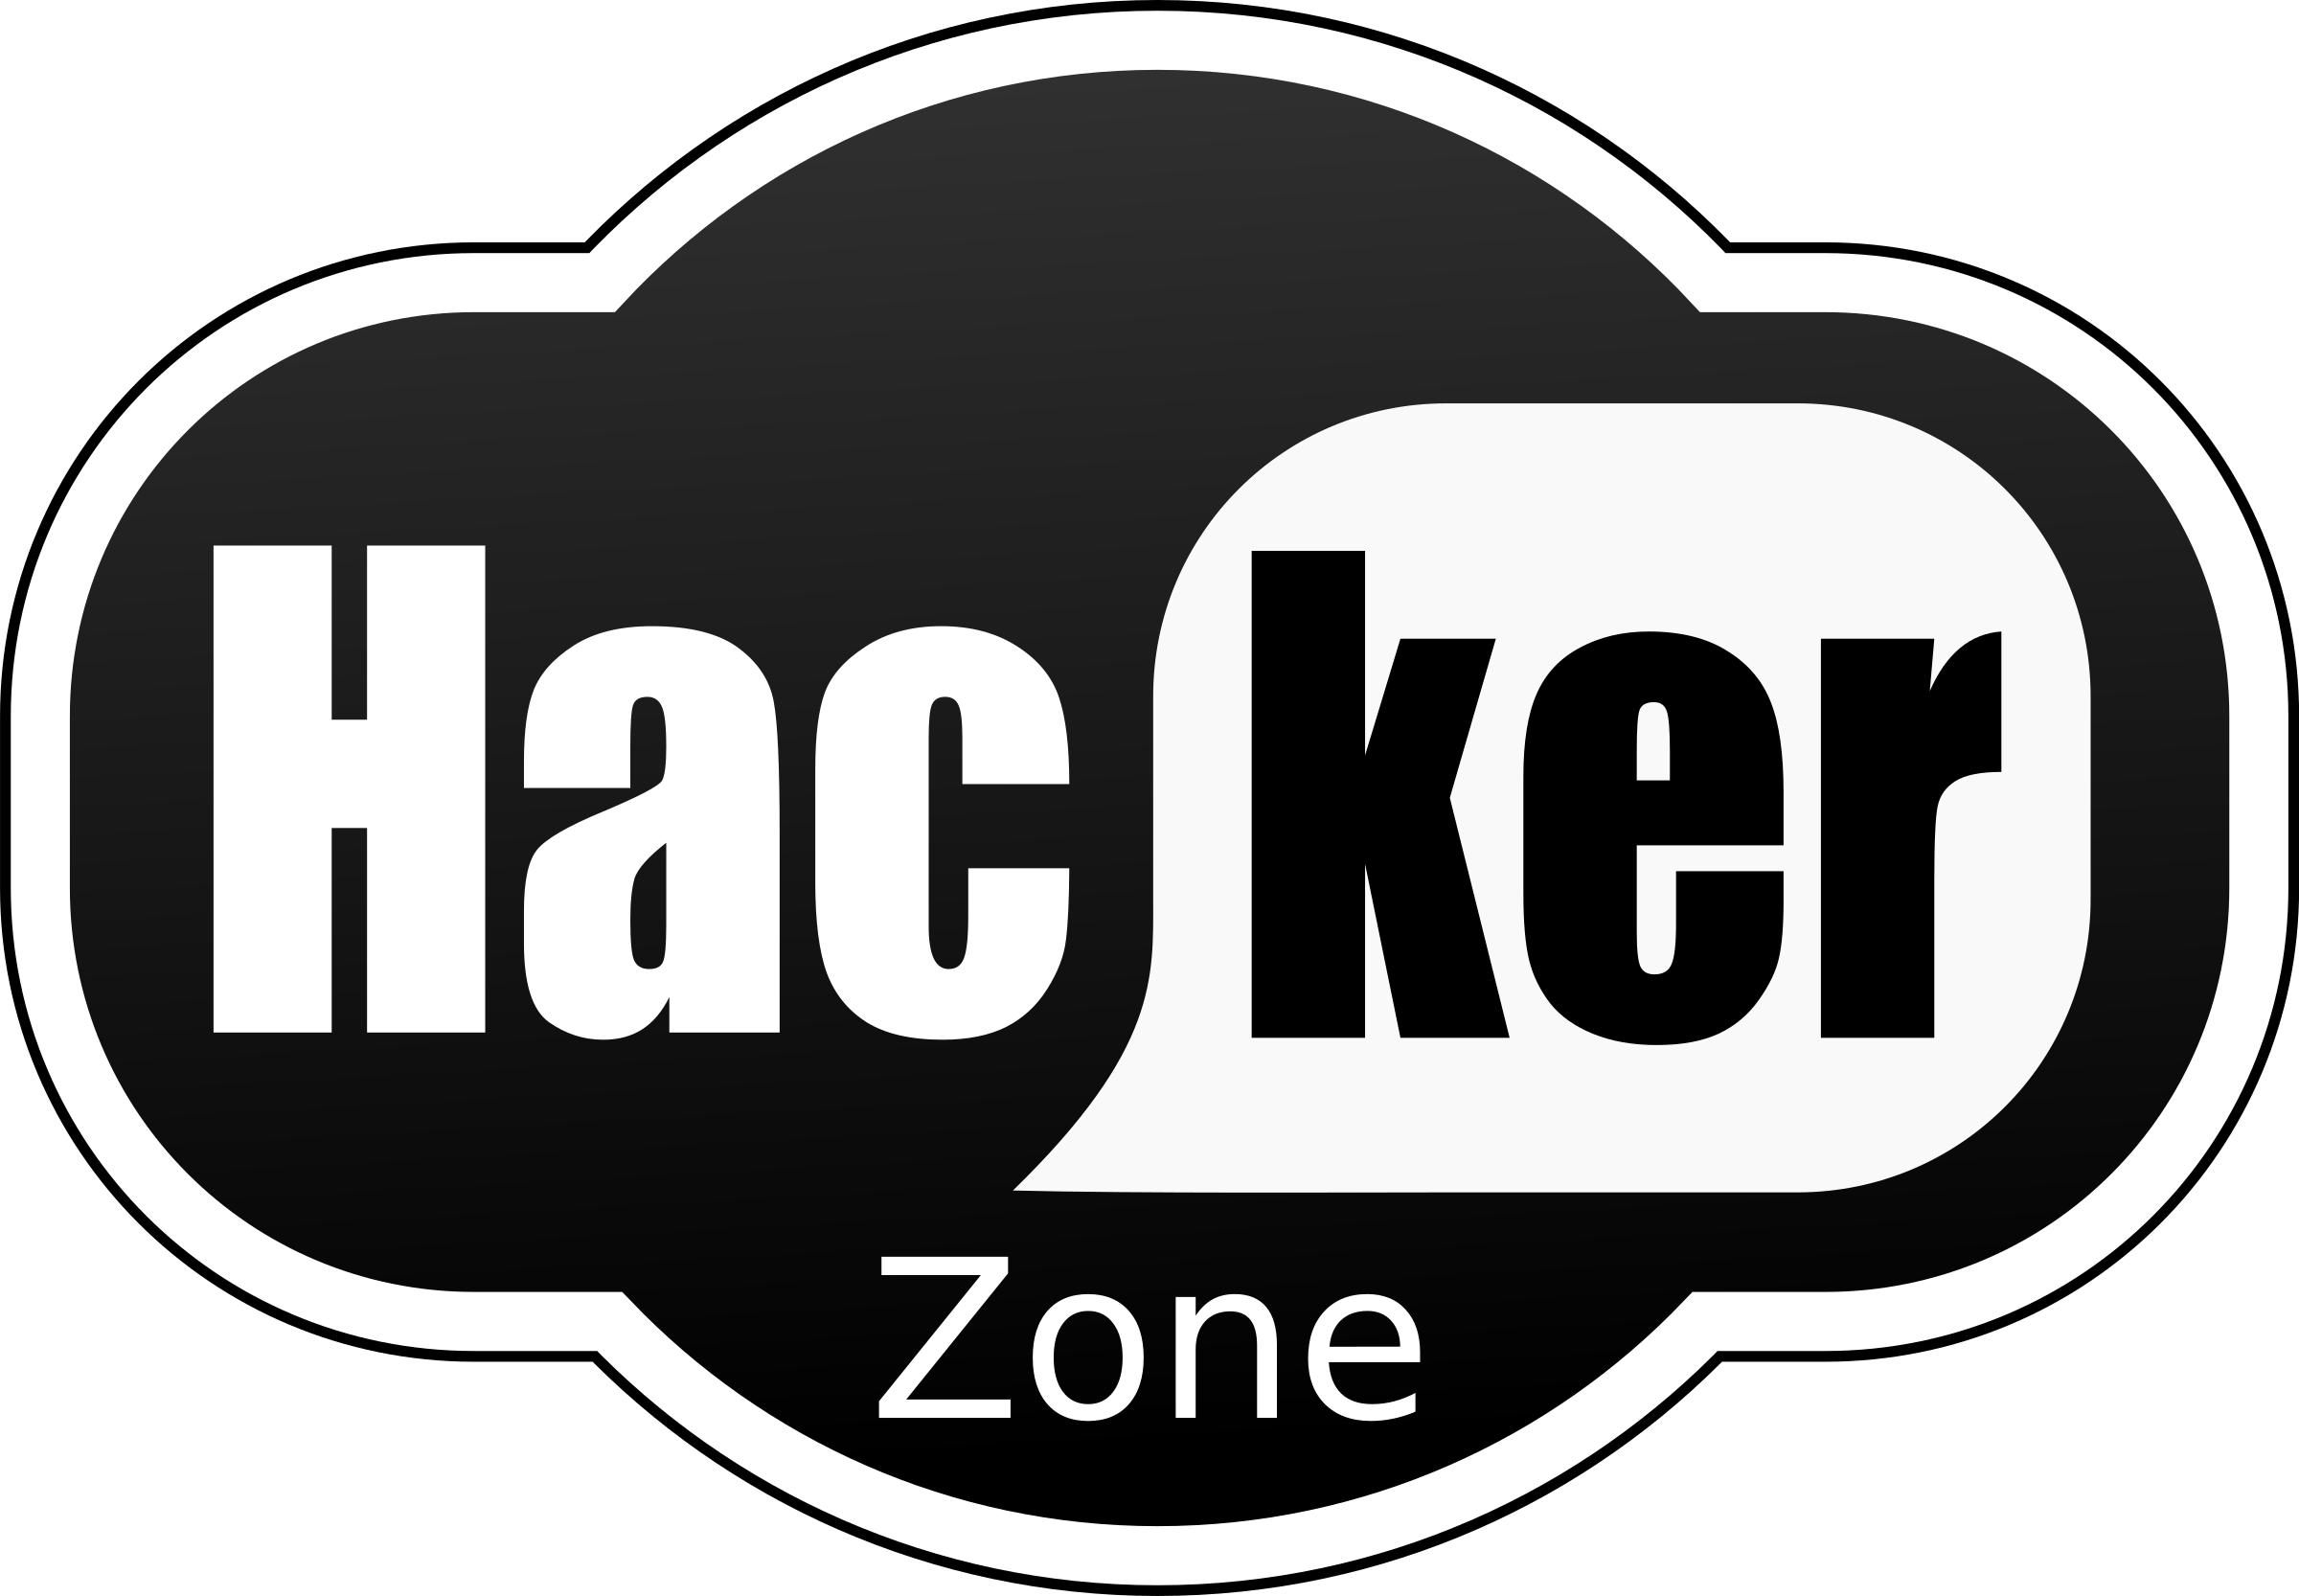 Hacker zone png